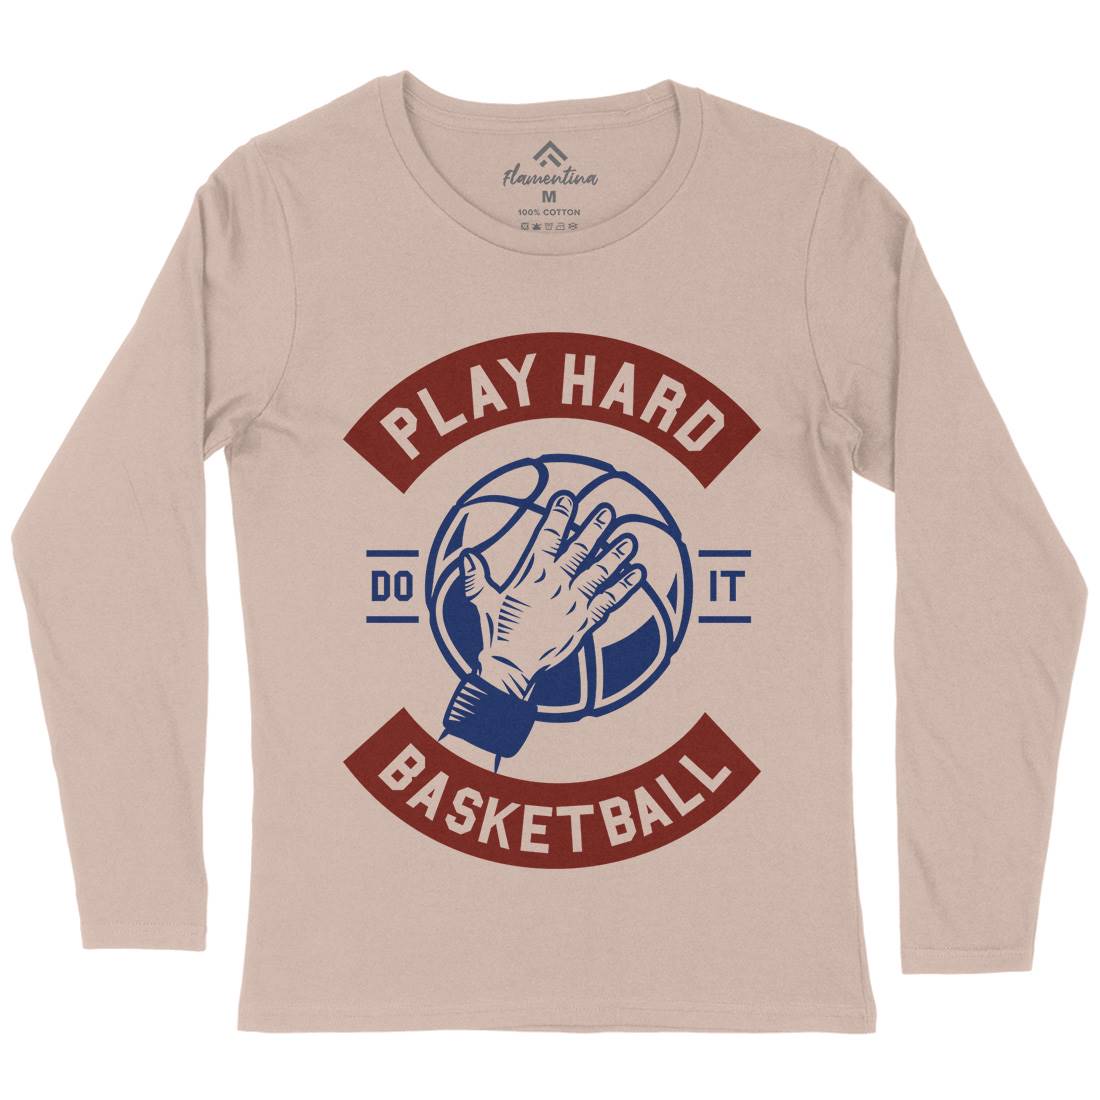 Play Hard Basketball Womens Long Sleeve T-Shirt Sport A261